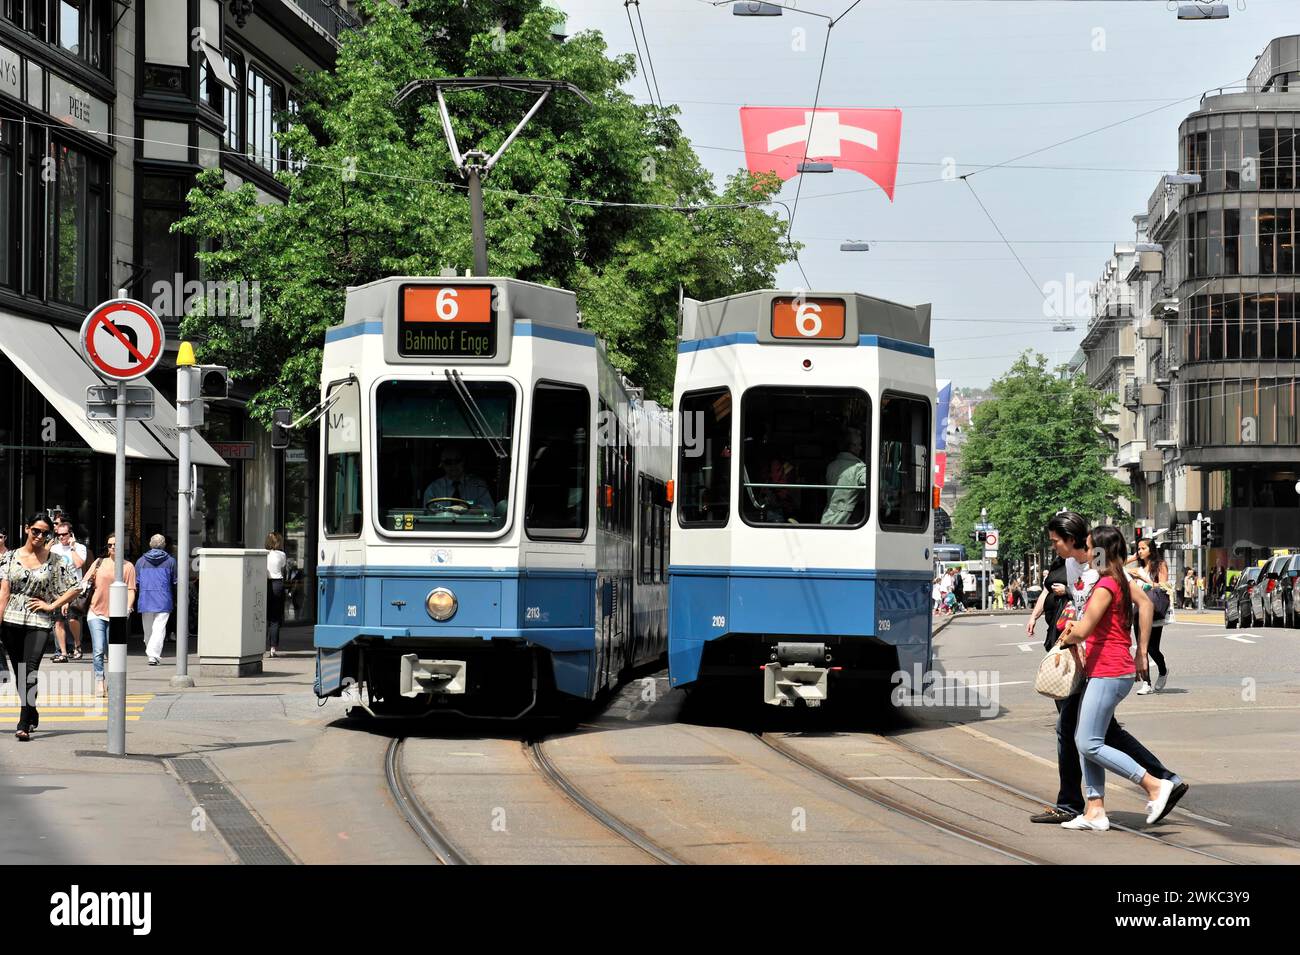 Trams, Bahnhofsstrasse, City of Zurich, Switzerland Stock Photo